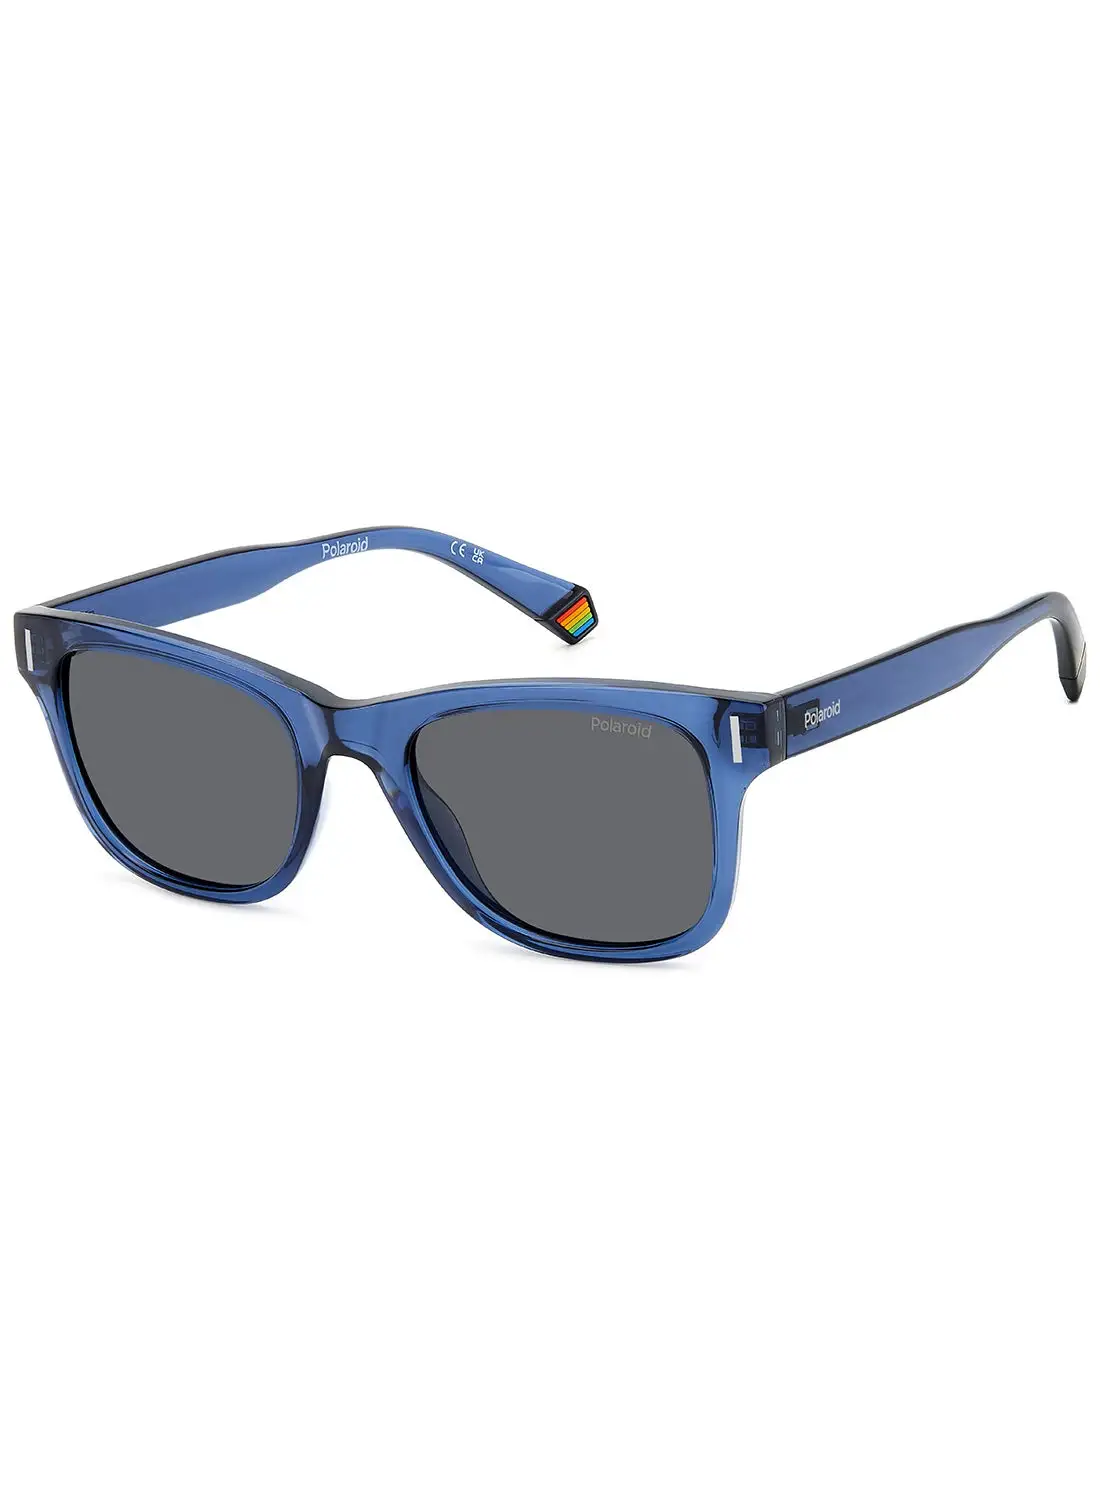 Polaroid Unisex Polarized Rectangular Sunglasses - Pld 6206/S Blue Millimeter - Lens Size: 51 Mm